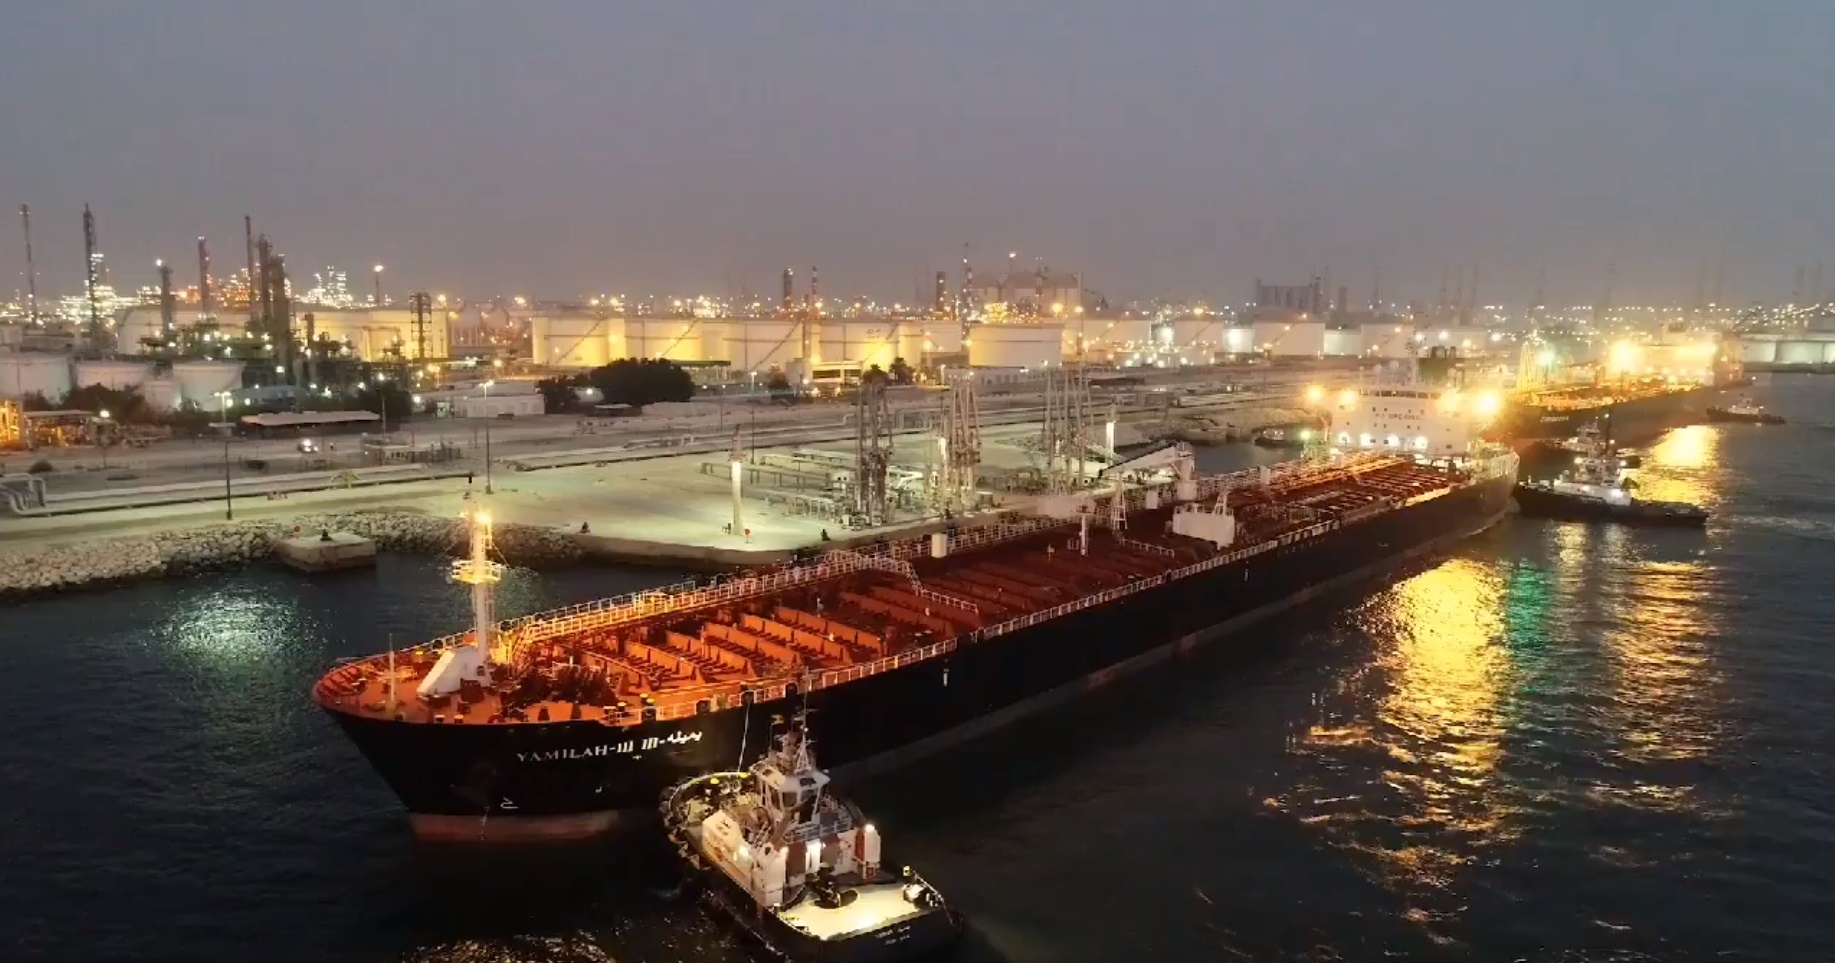 Châu Âu mua dầu thô của Abu Dhabi để hỗ trợ thiếu hụt từ Nga